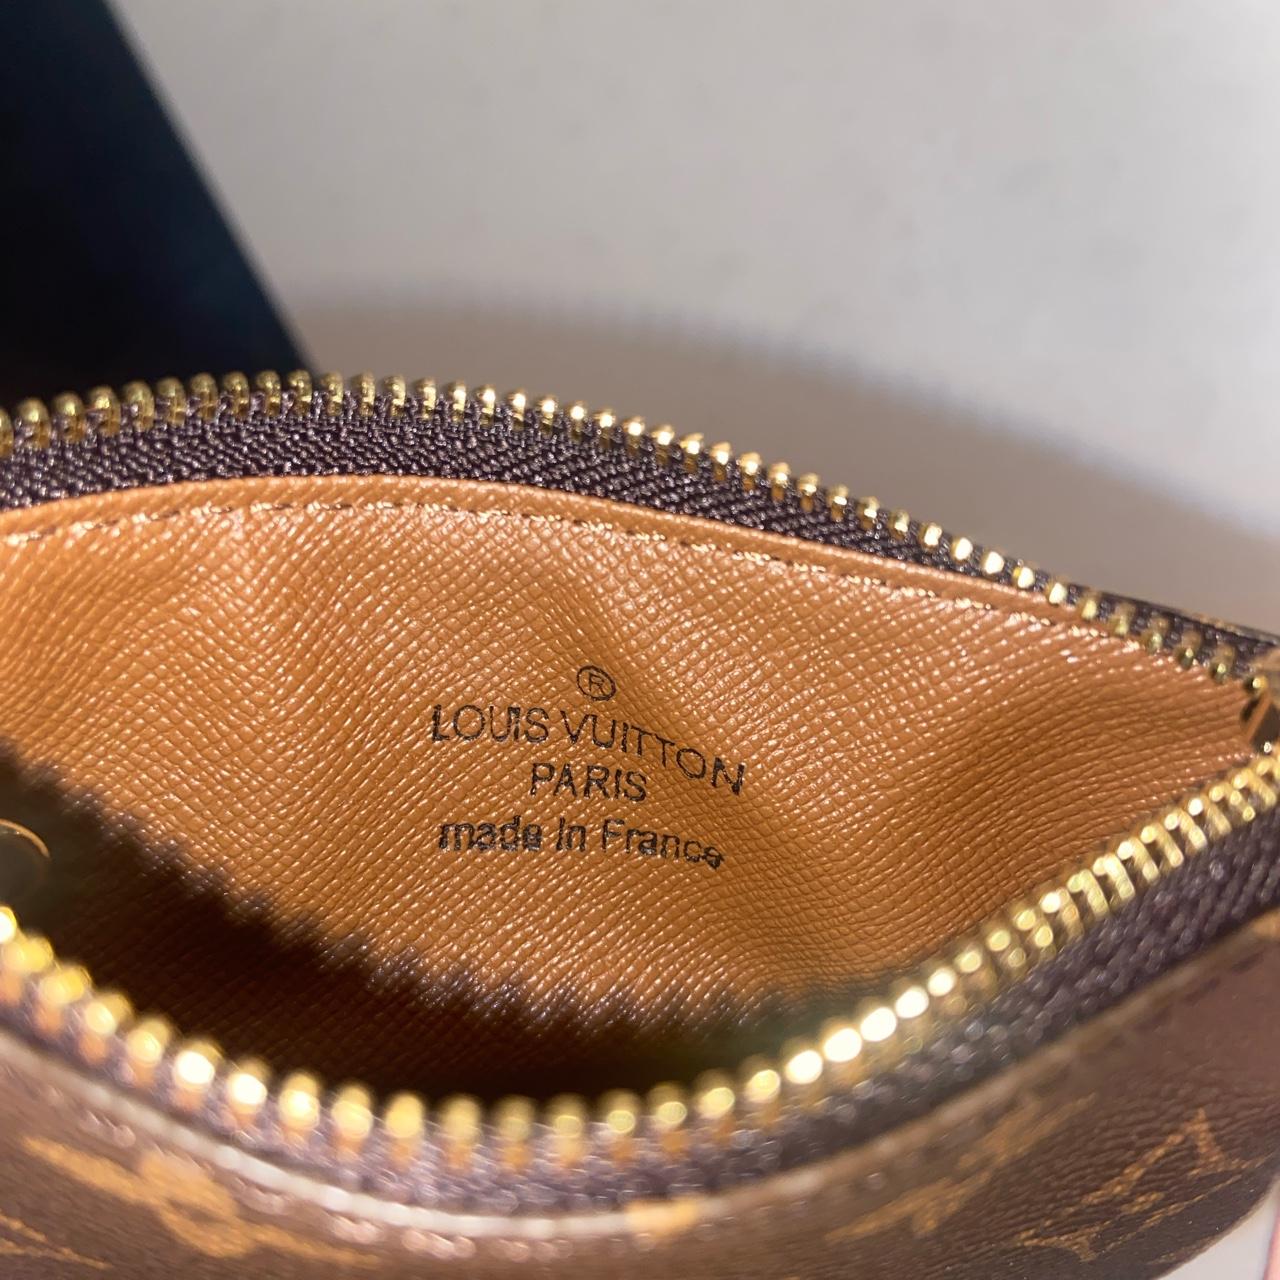 Authentic Louis Vuitton DAUPHINE DRAGONNE KEY - Depop